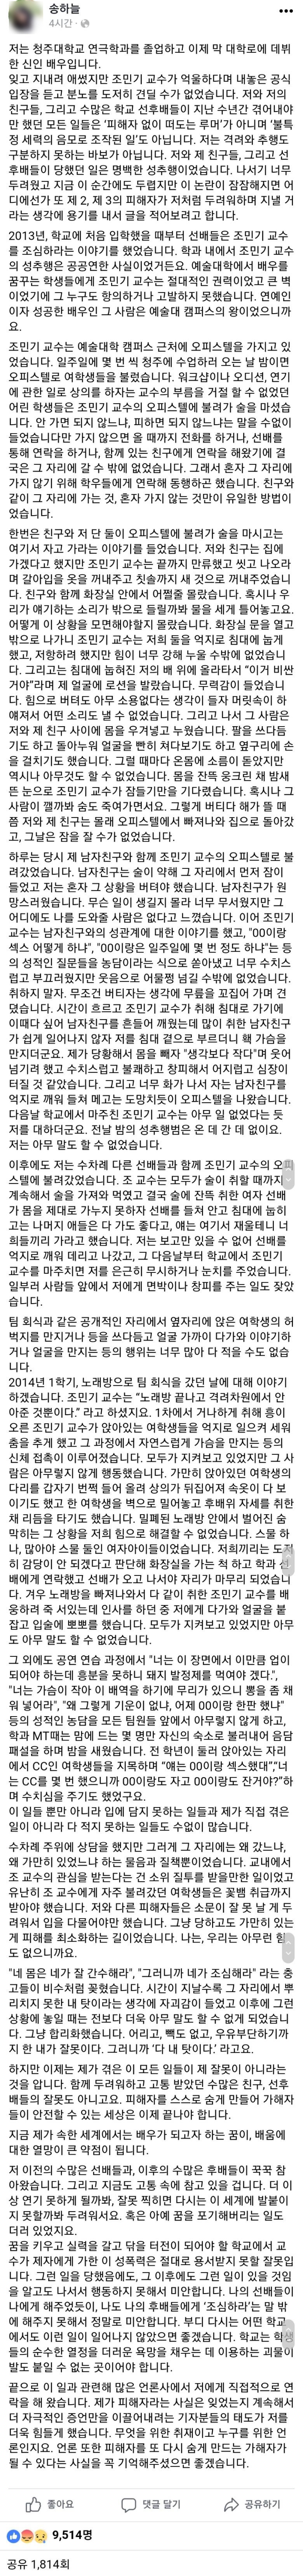 연극배우 송하늘씨가 sns에 밝힌 배우 조민기 성추행 폭로